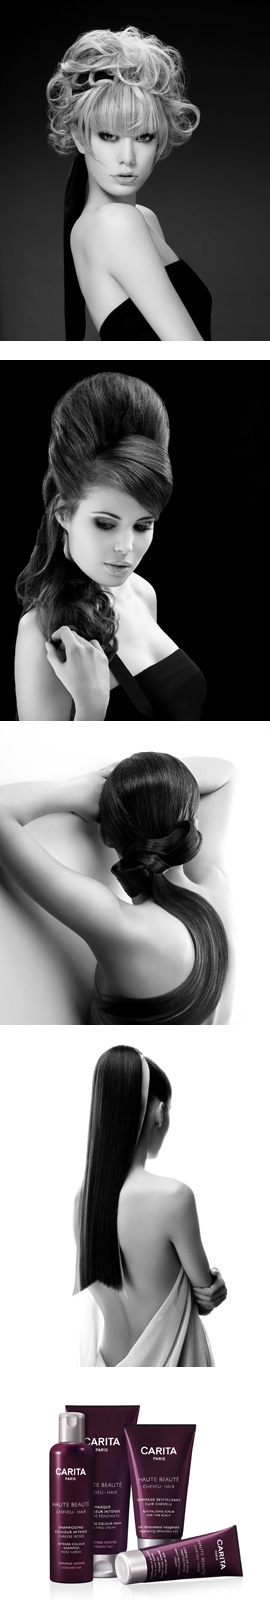 קריטה פריז - סדרת מוצרי השיער. צילום: יח"צ חו"ל